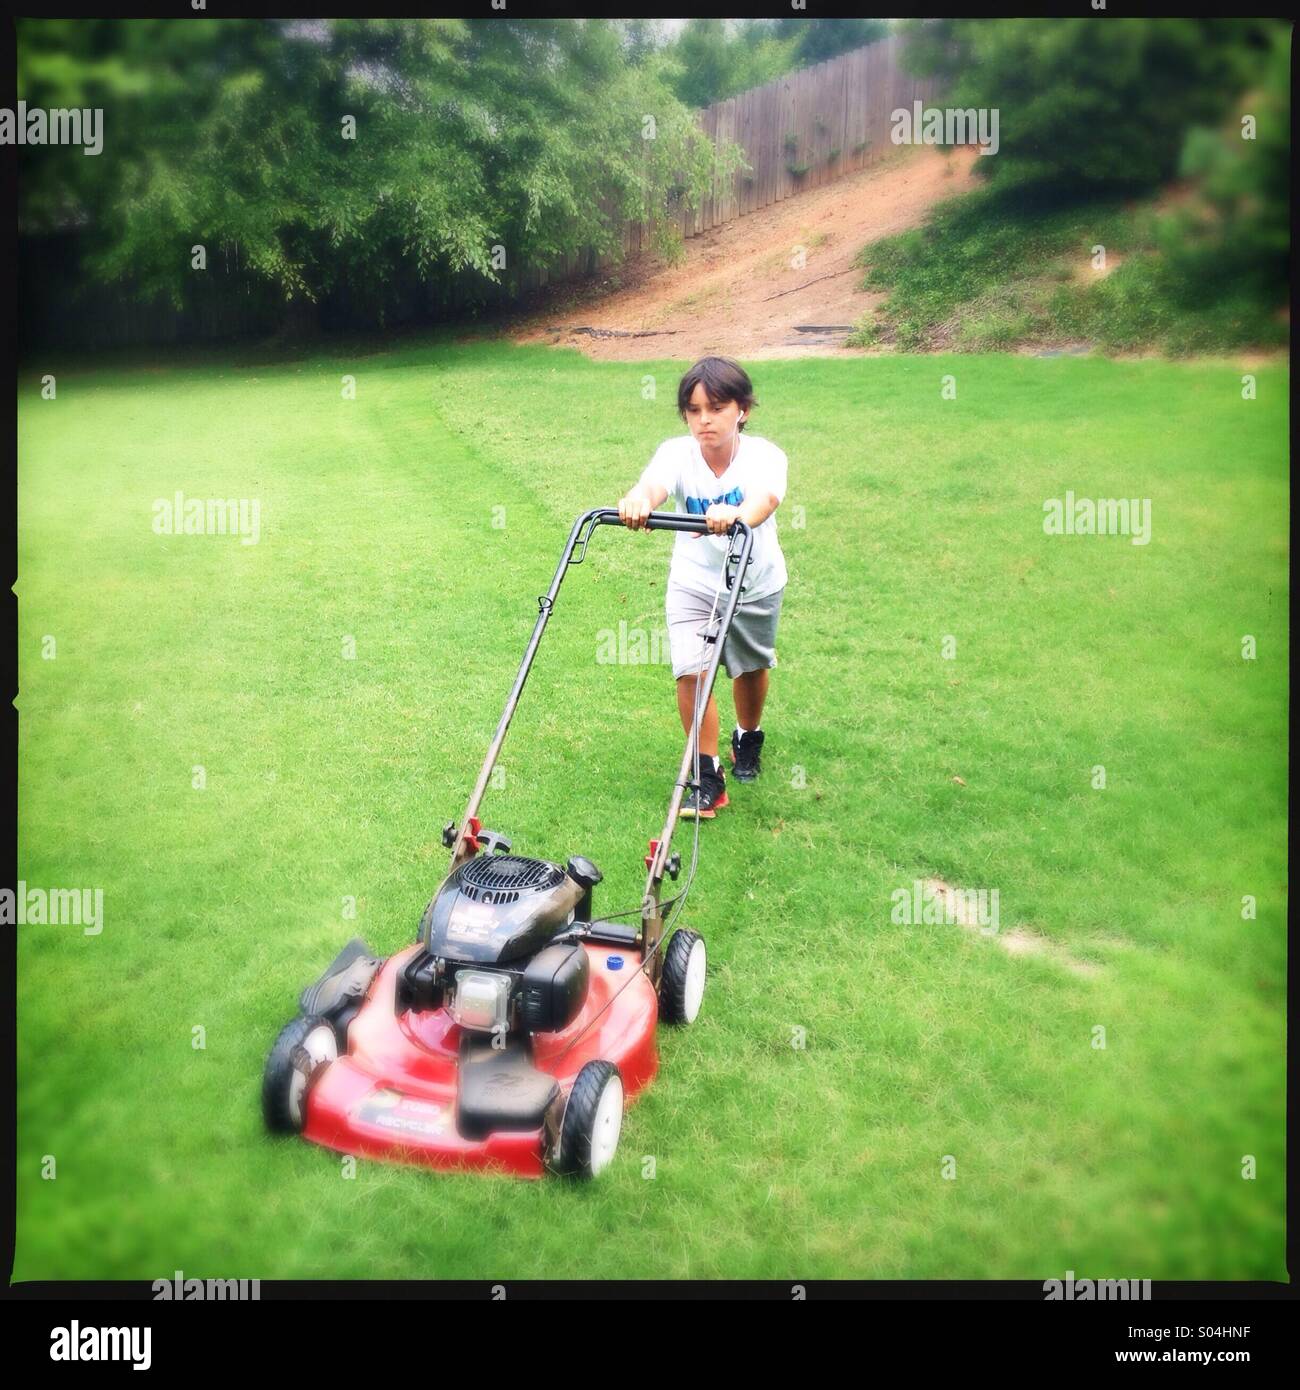 Little boy cutting grass Stock Photo